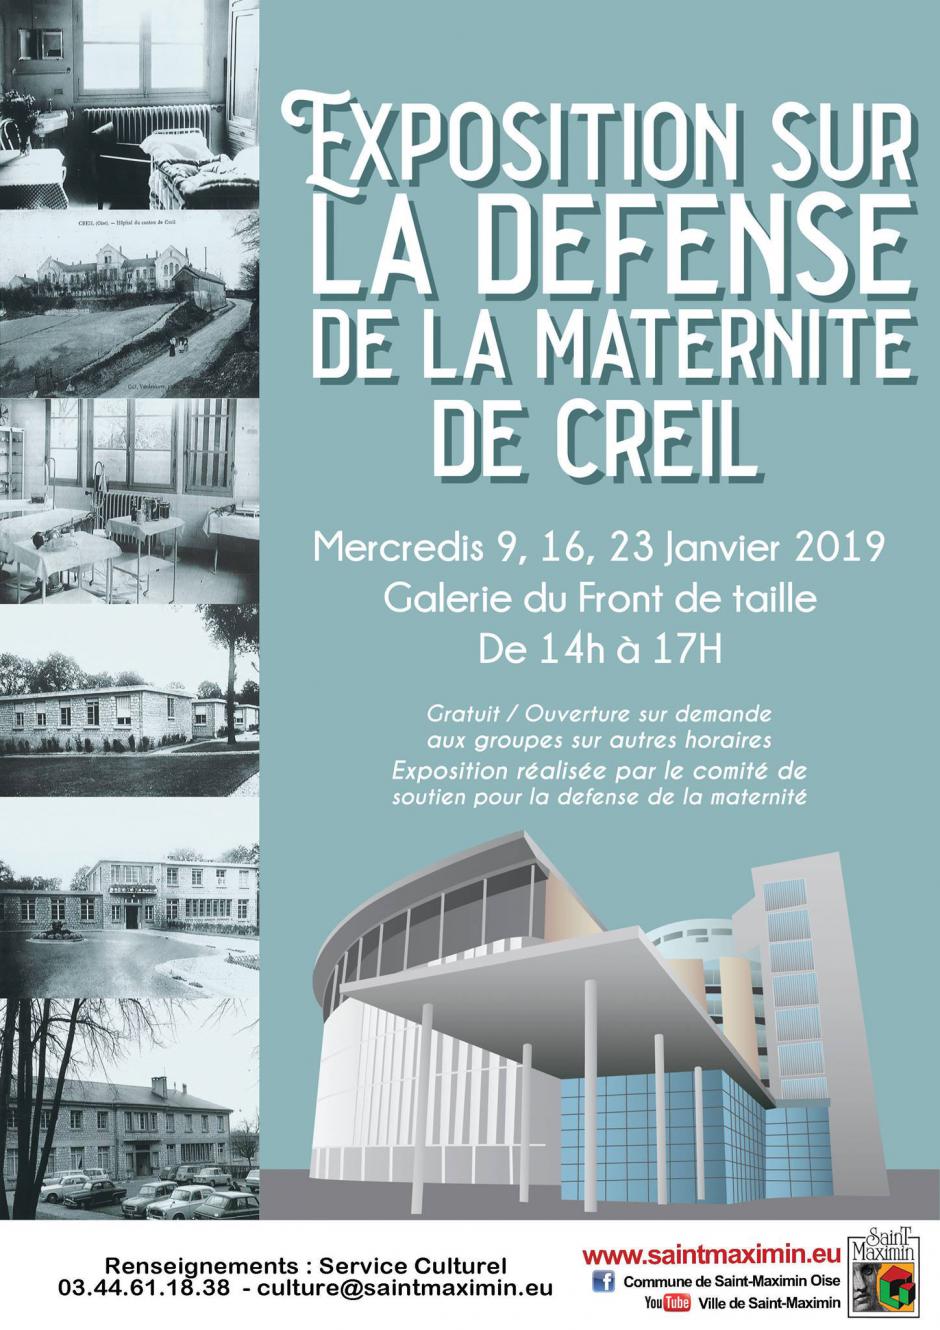 9, 16 & 23 janvier, Saint-Maximin - Exposition sur la défense de la maternité de Creil